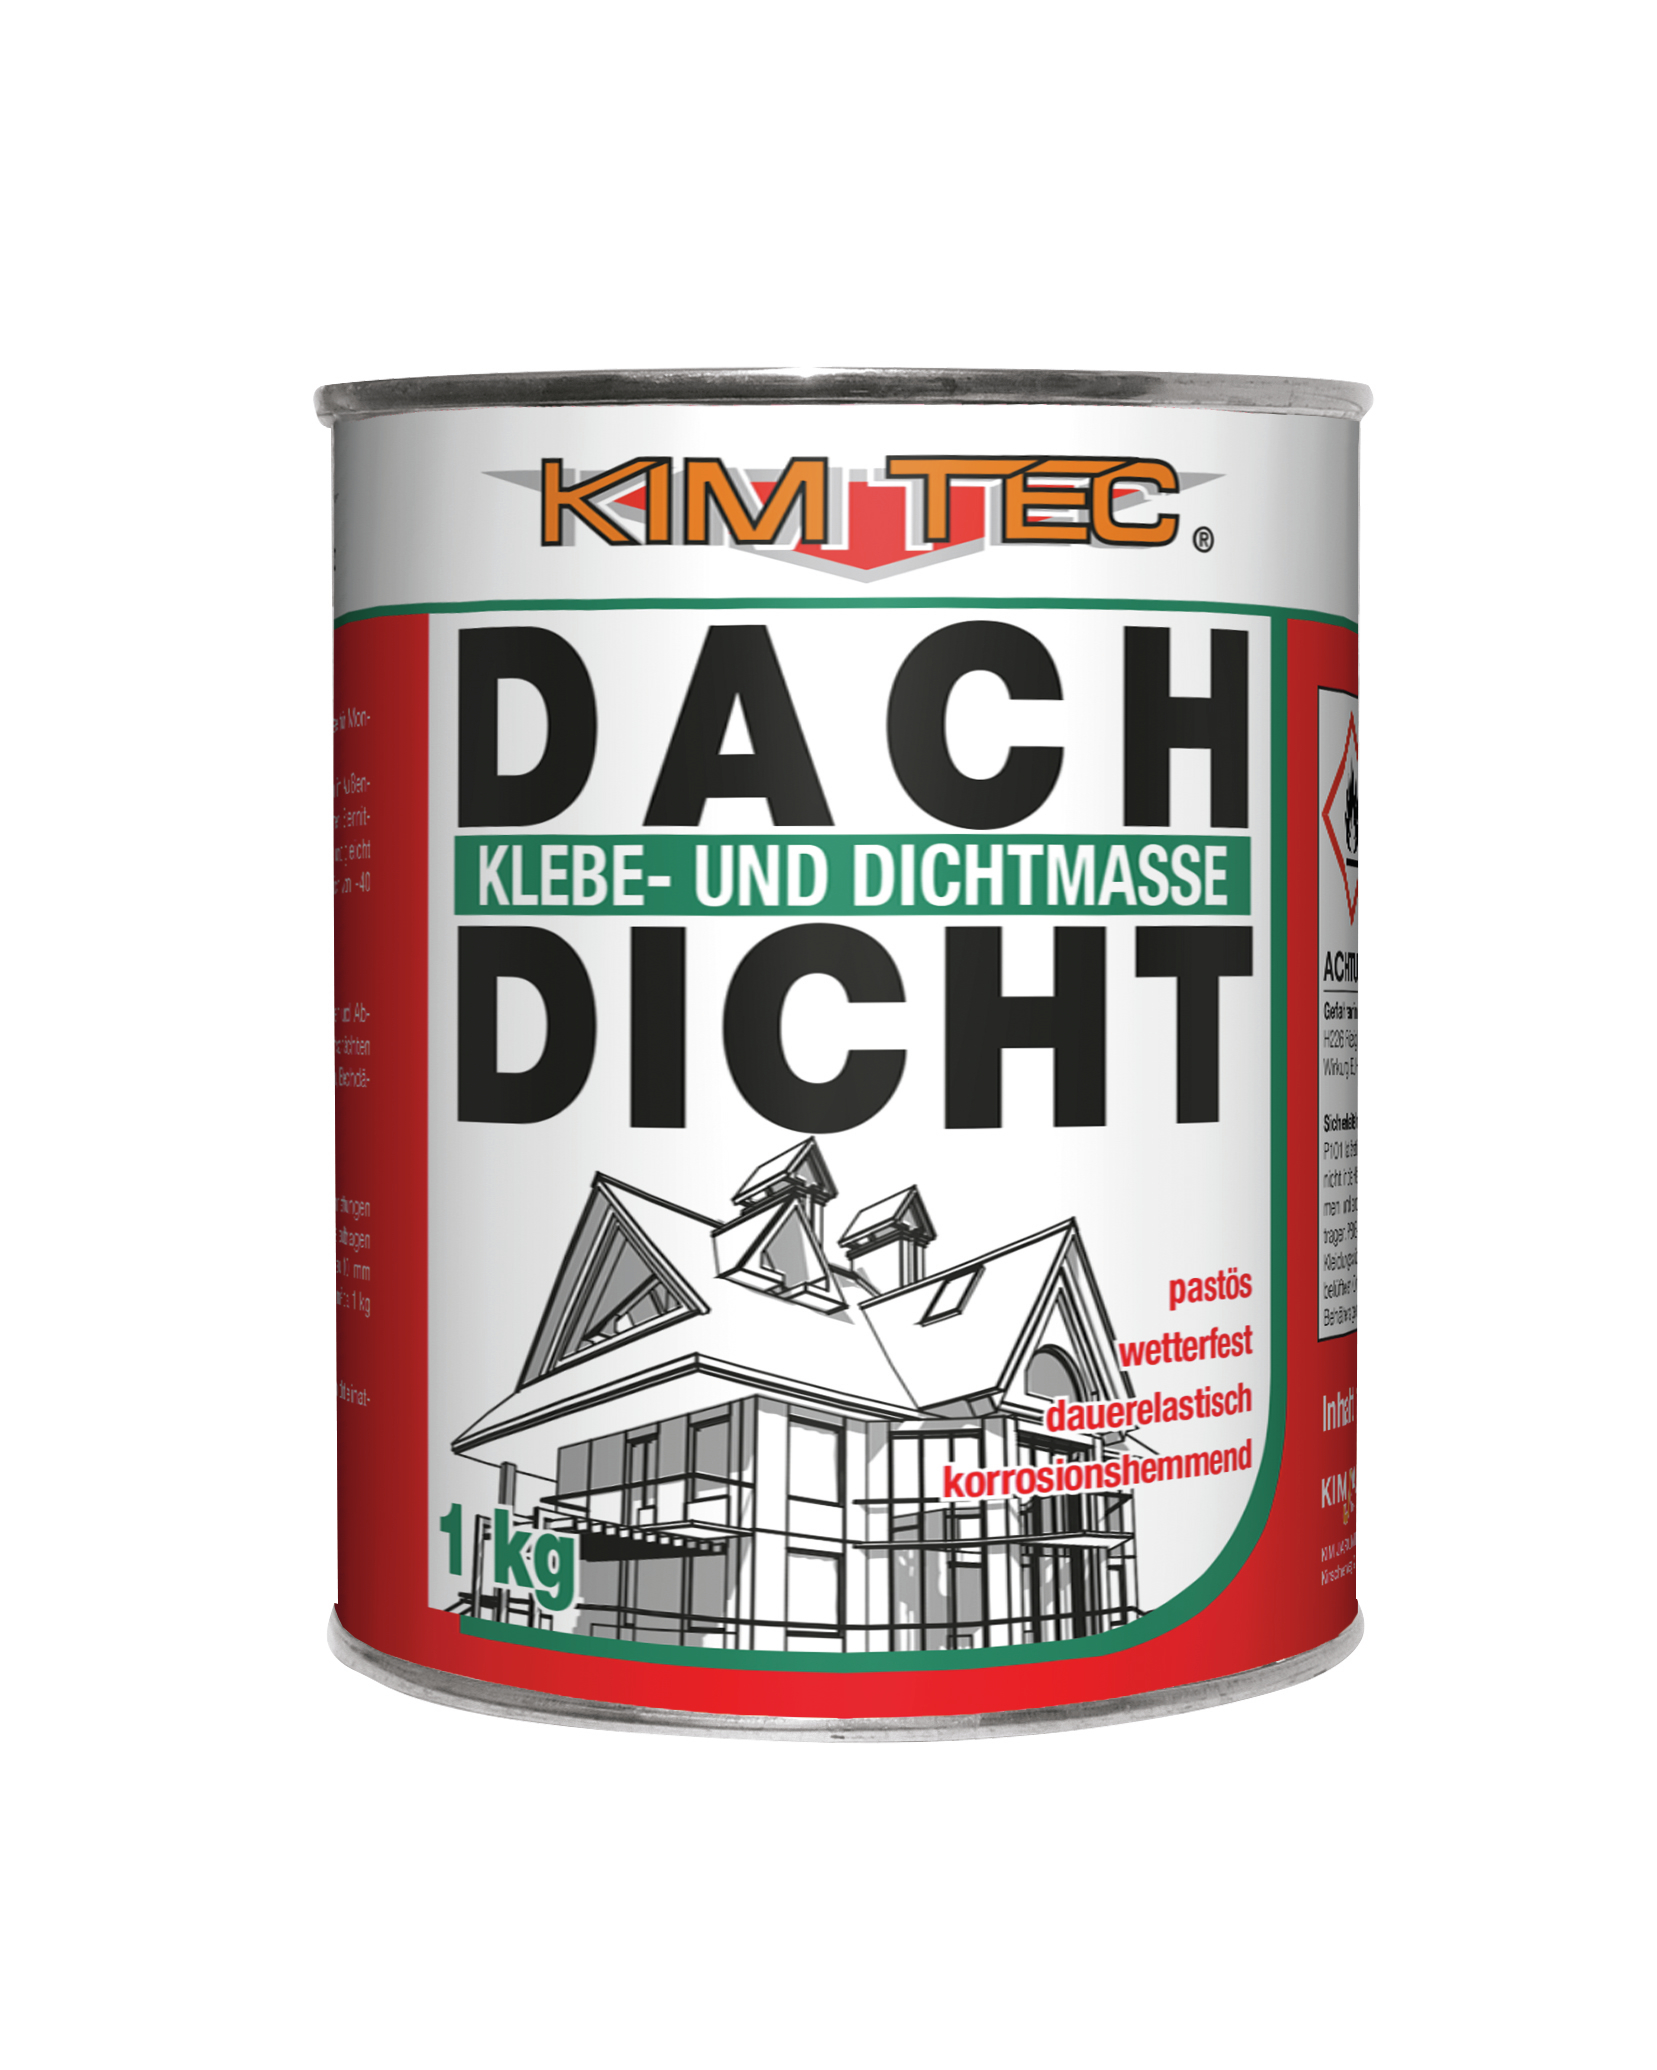 KIM JAROLIM KIM-TEC Dach-Dicht schwarz 1kg Klebe- und Dichtmasse